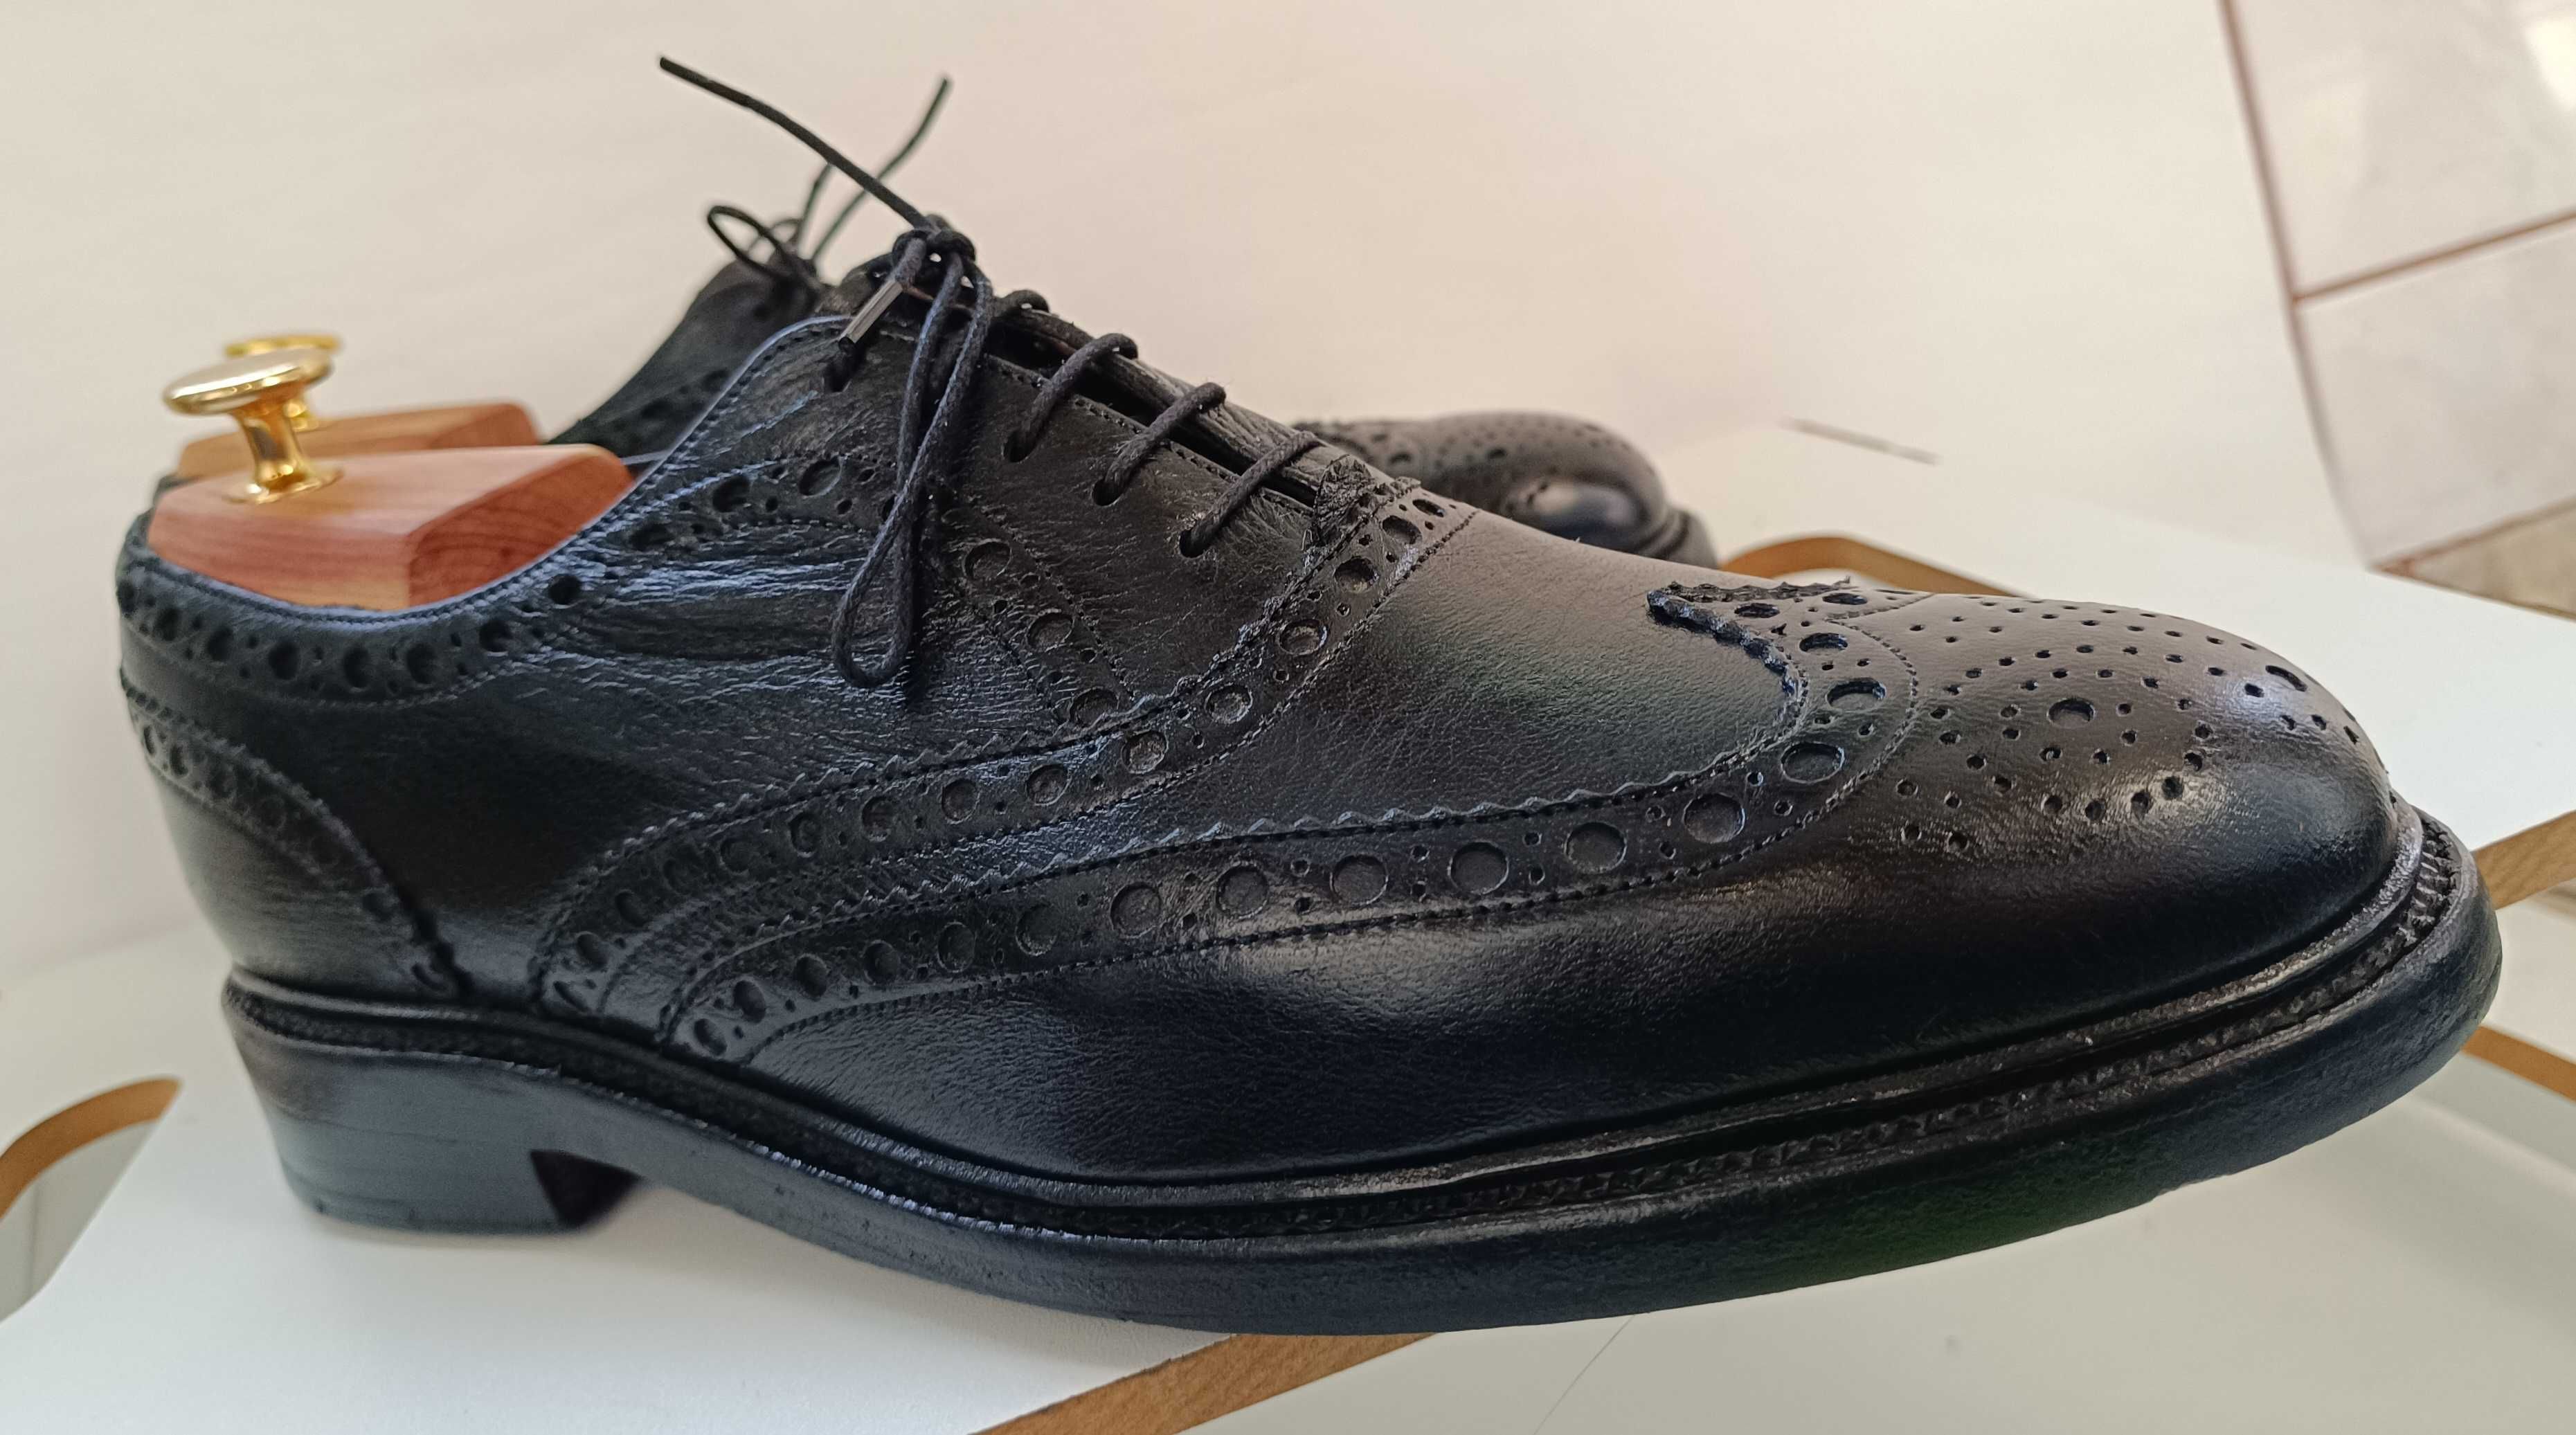 Pantofi oxford 43 brogue lucrati manual de lux Barker piele naturala